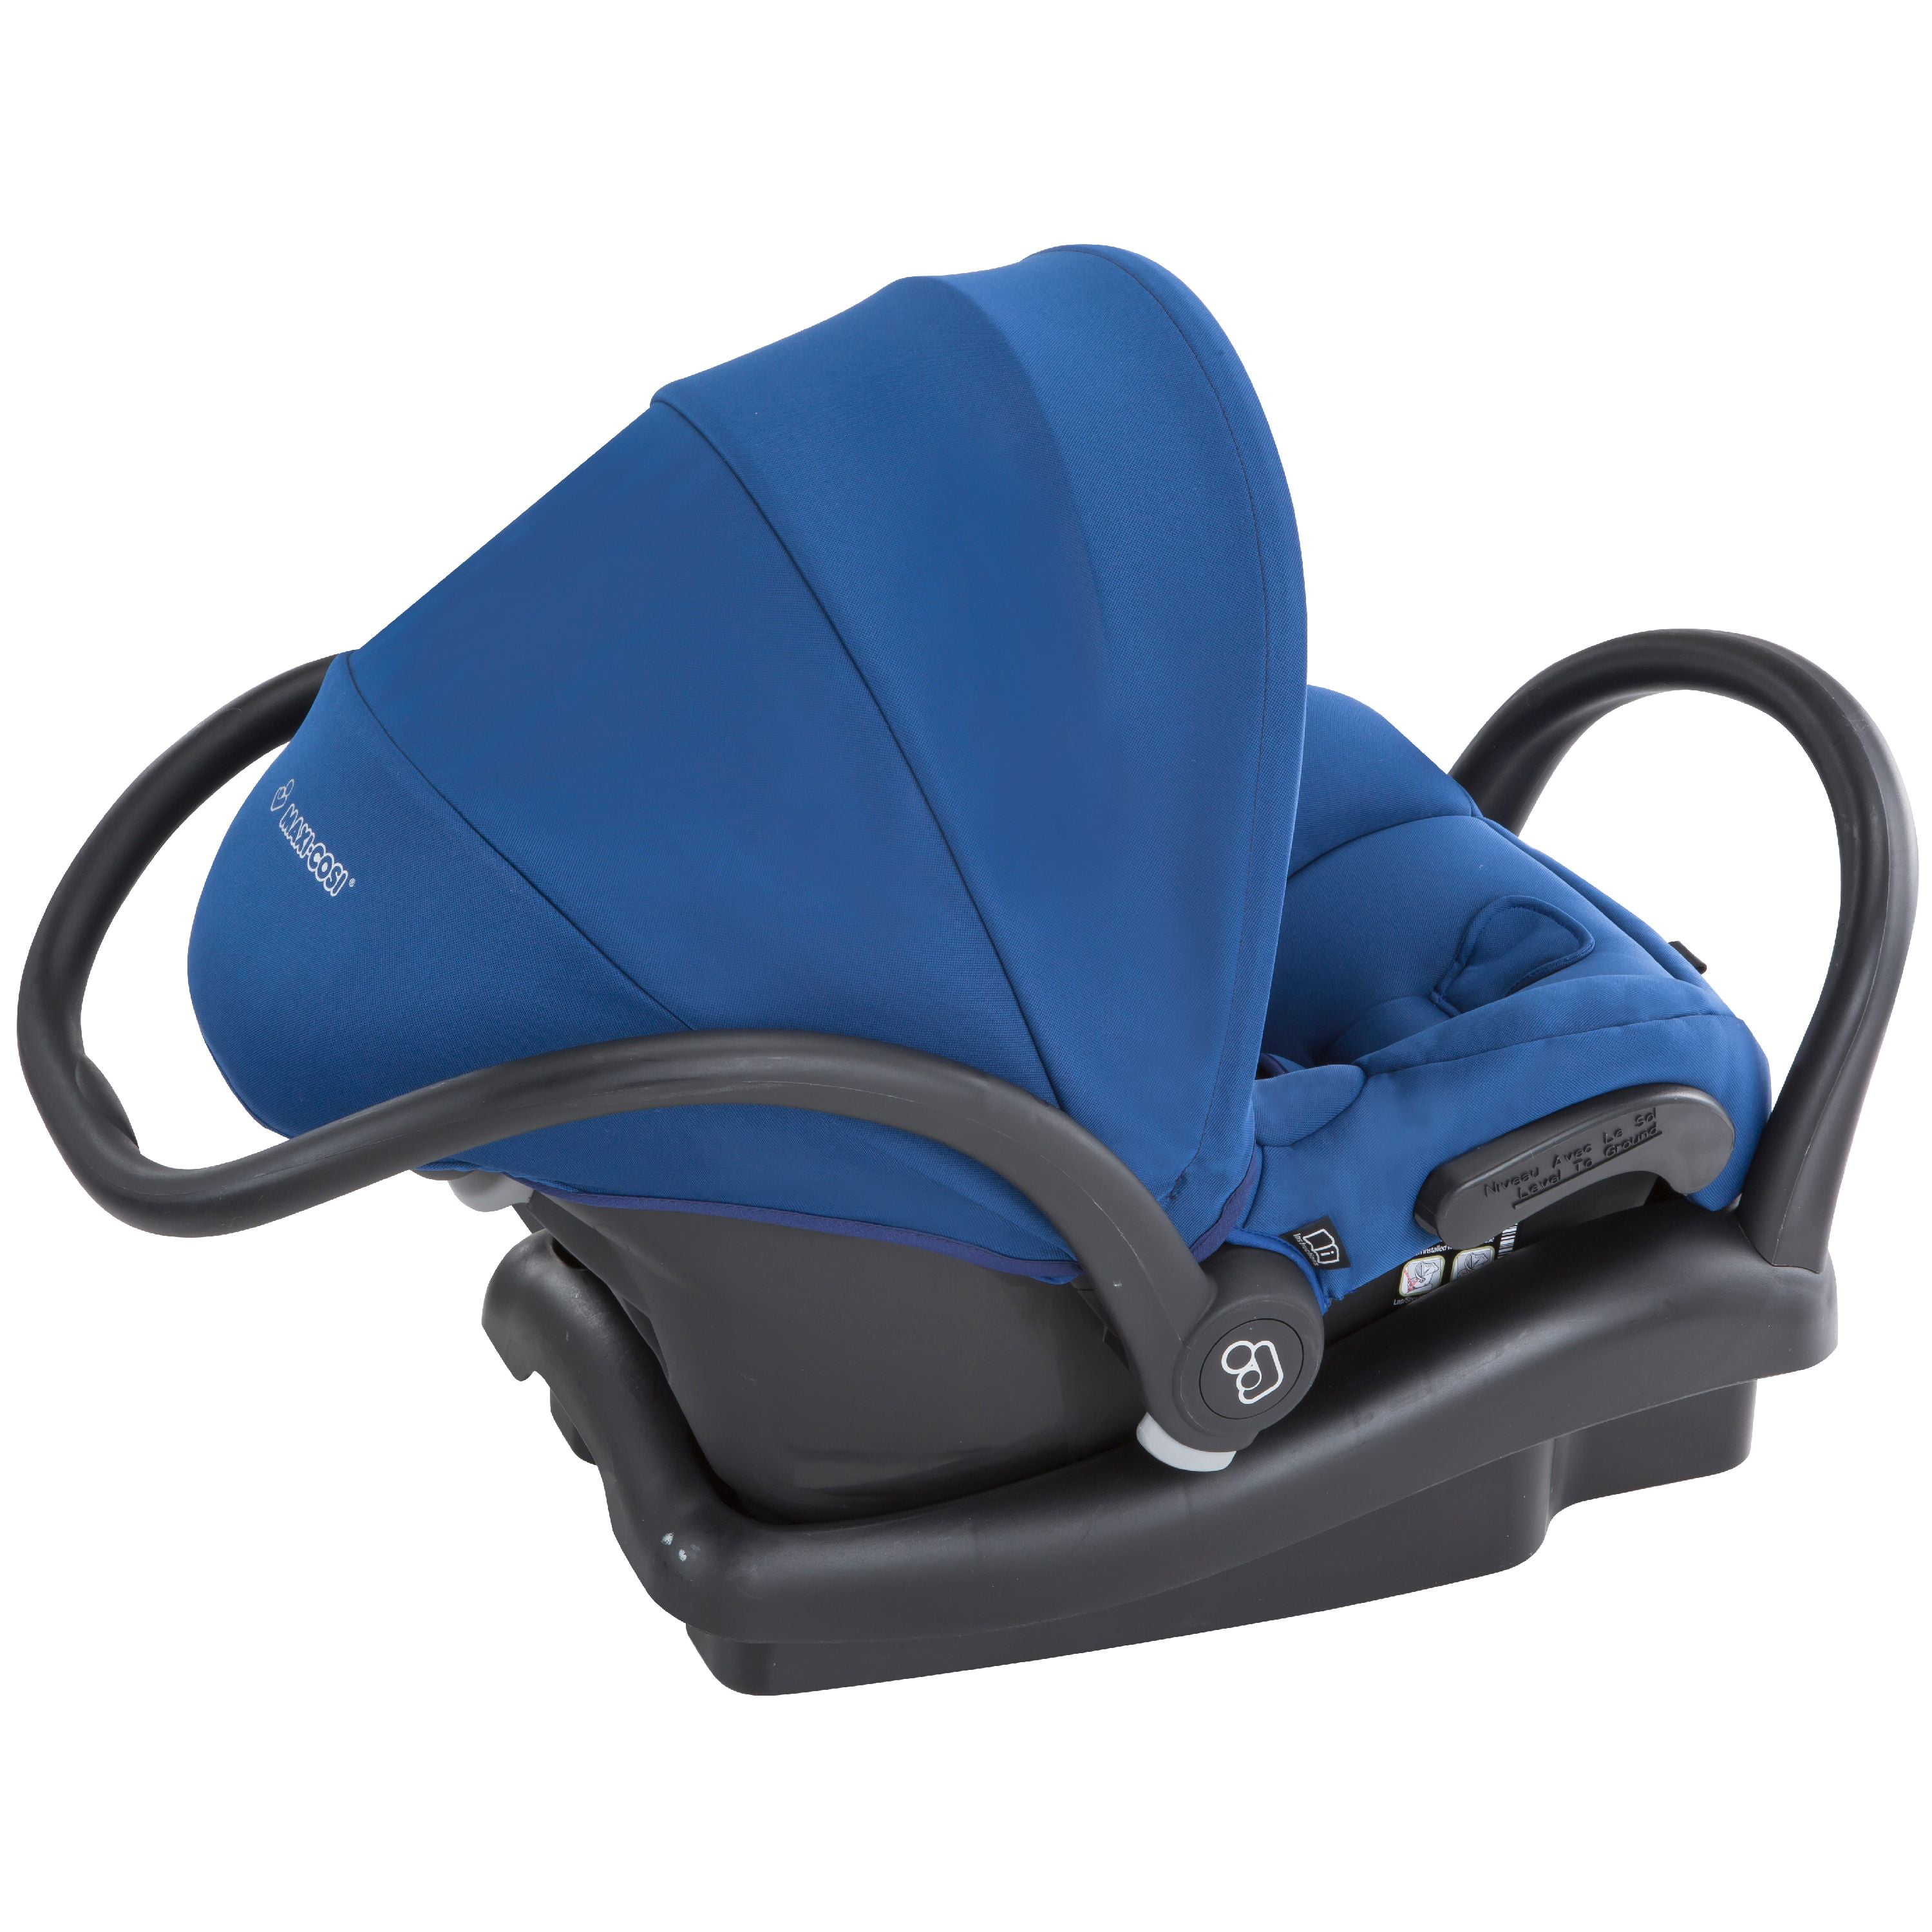 Maxi Cosi Mico Max 30 Infant Car Seat, Blue Base